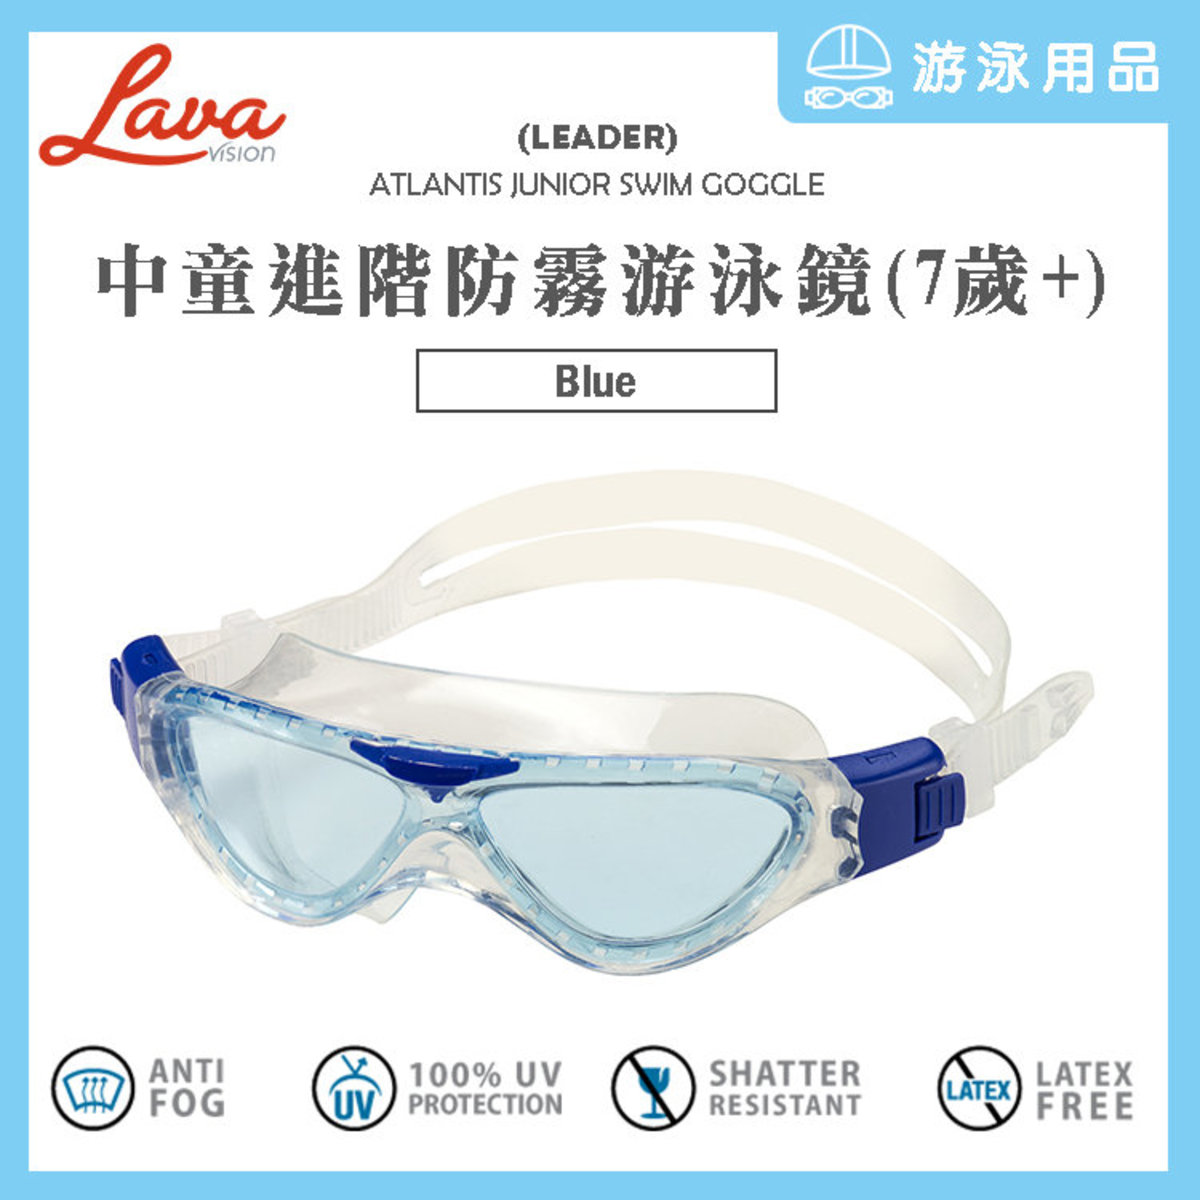 【Blue】Atlantis Junior Swim Goggle Swimming Accessories for 7+ junior or smaller faces